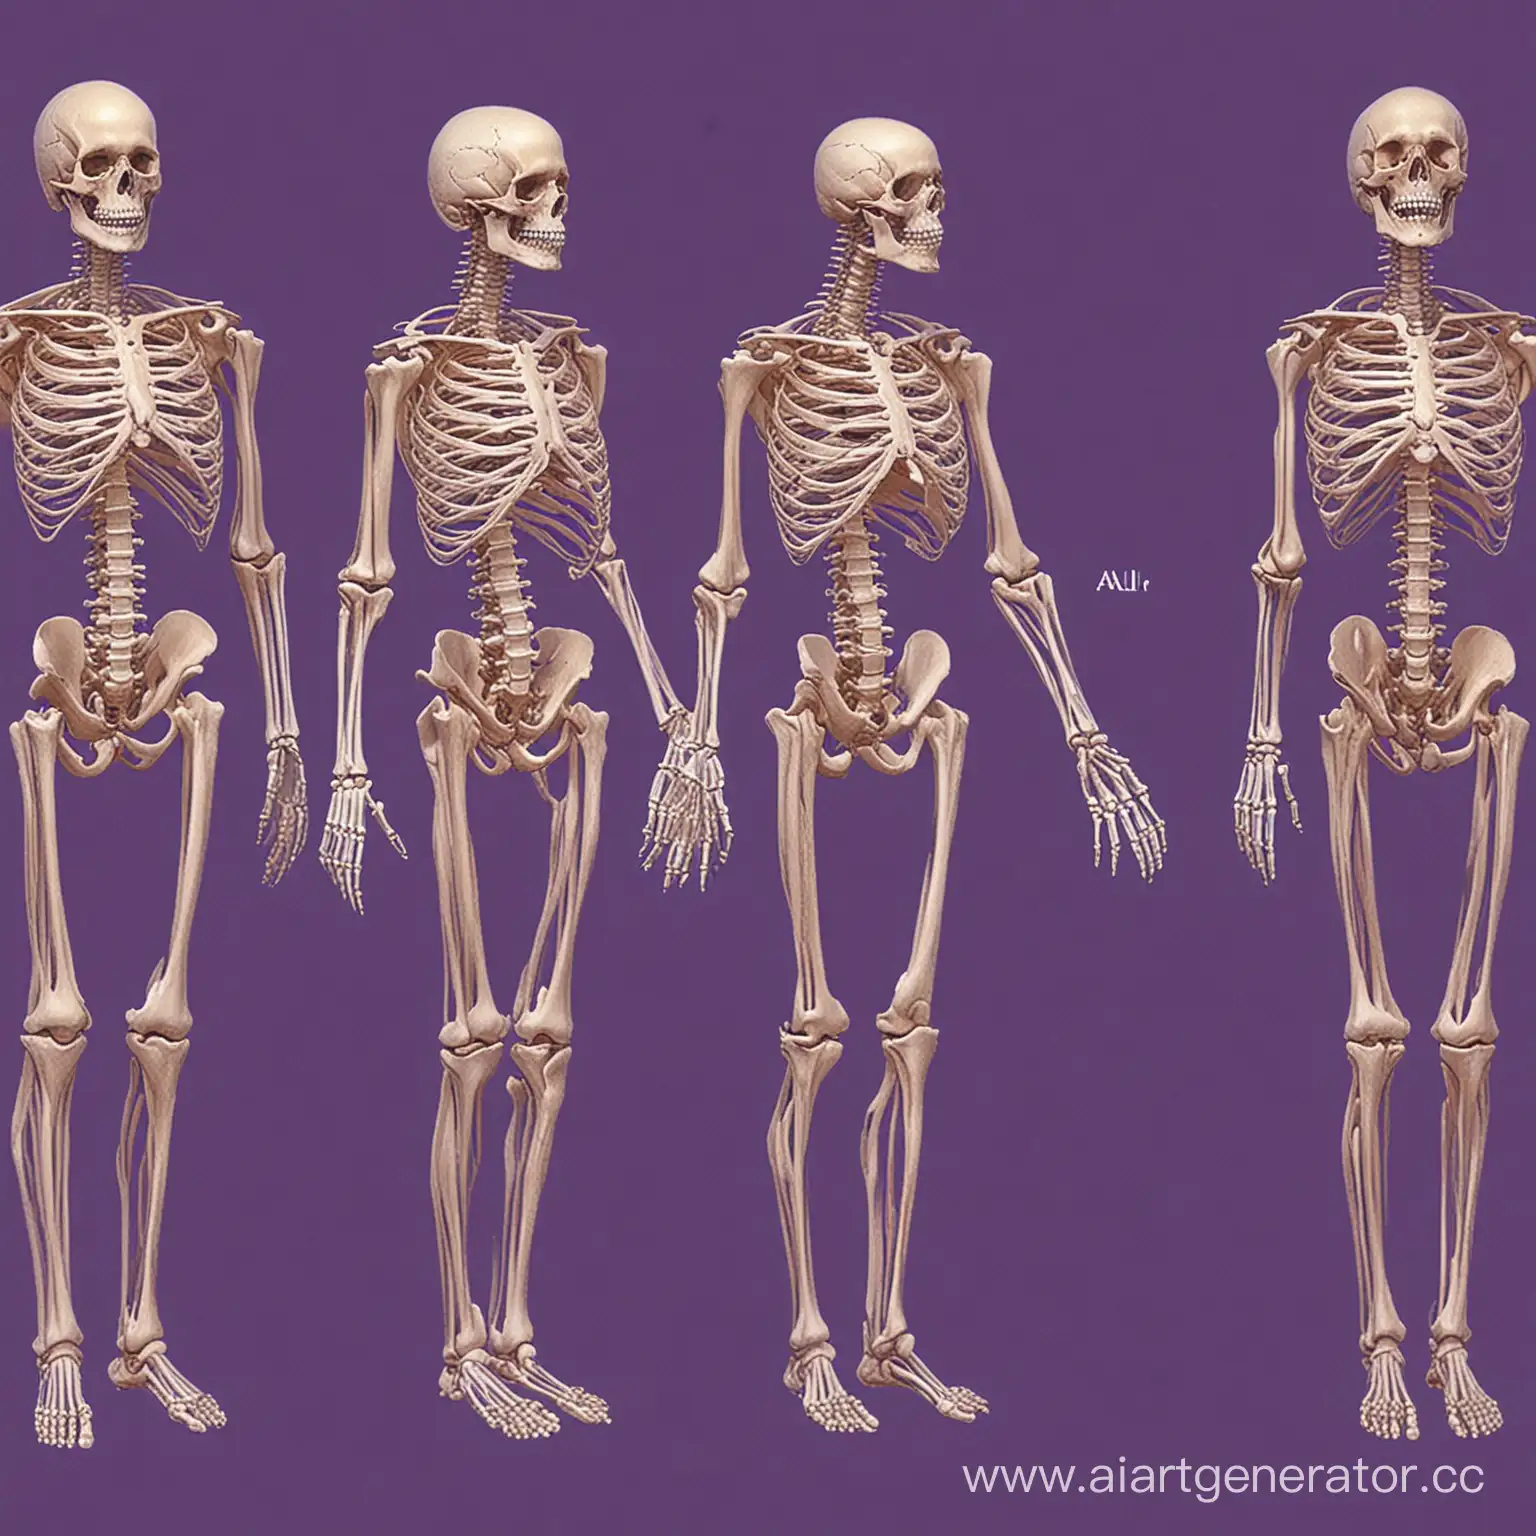 картинка костной системы человека как для учебника биологии. картинка должна быть на фиолетовом фоне